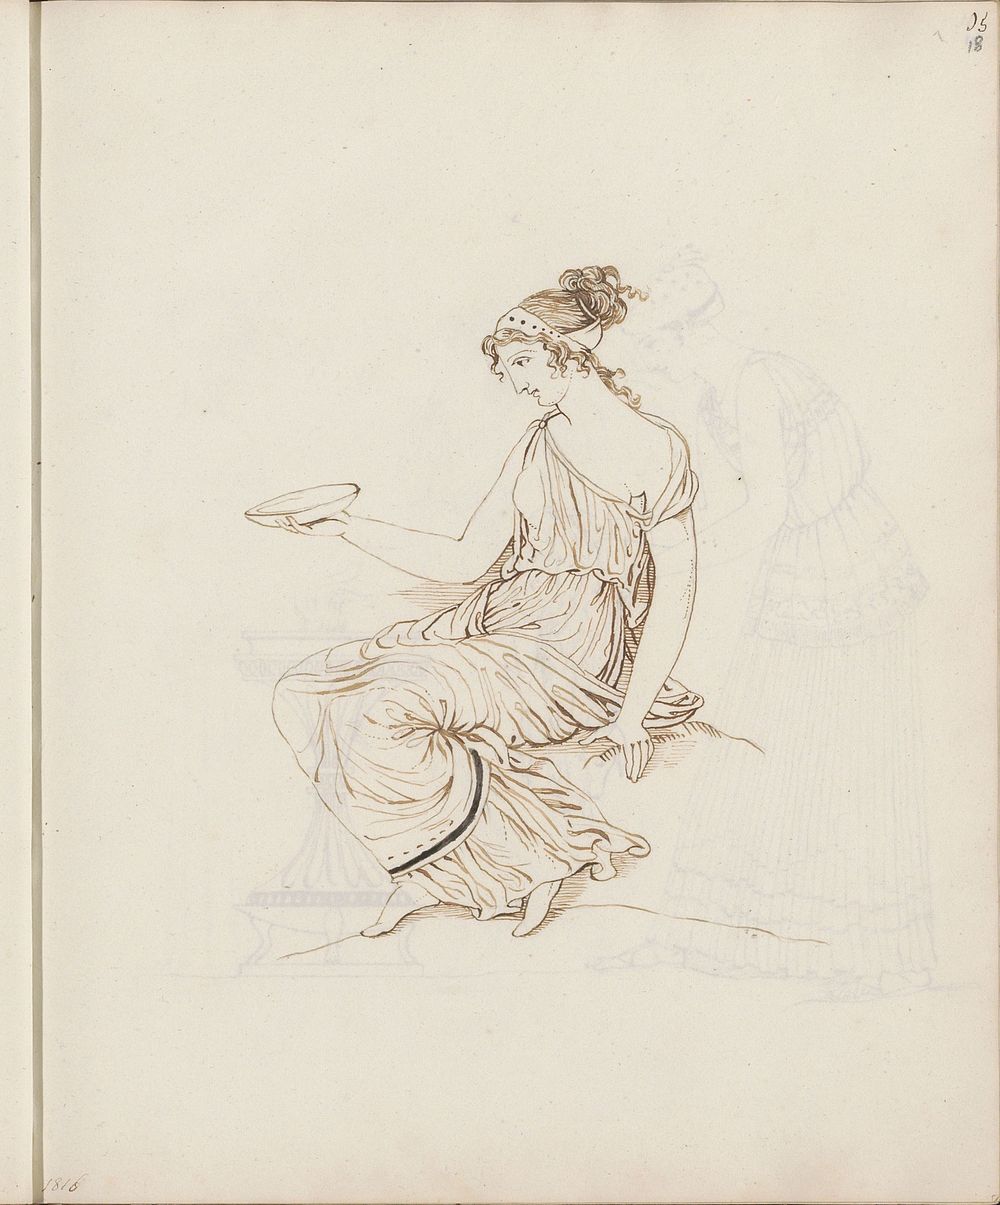 Zittende vrouw met een schaal in de hand, naar klassiek voorbeeld (1816) by jonkvrouw Elisabeth Kemper